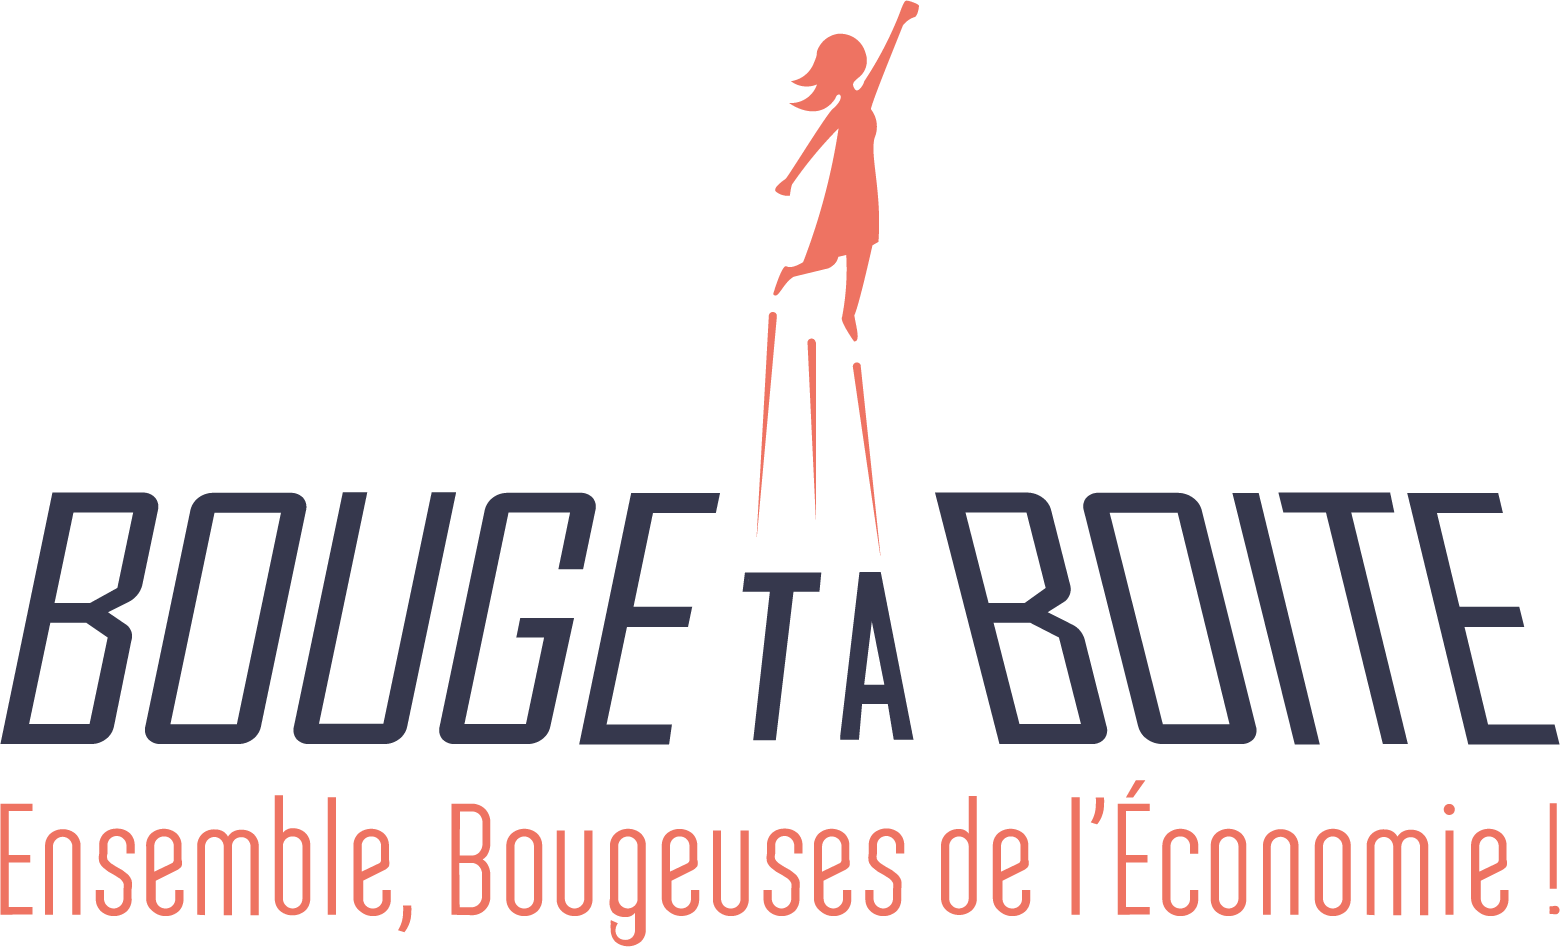 21 bouge_ta_boite_logo